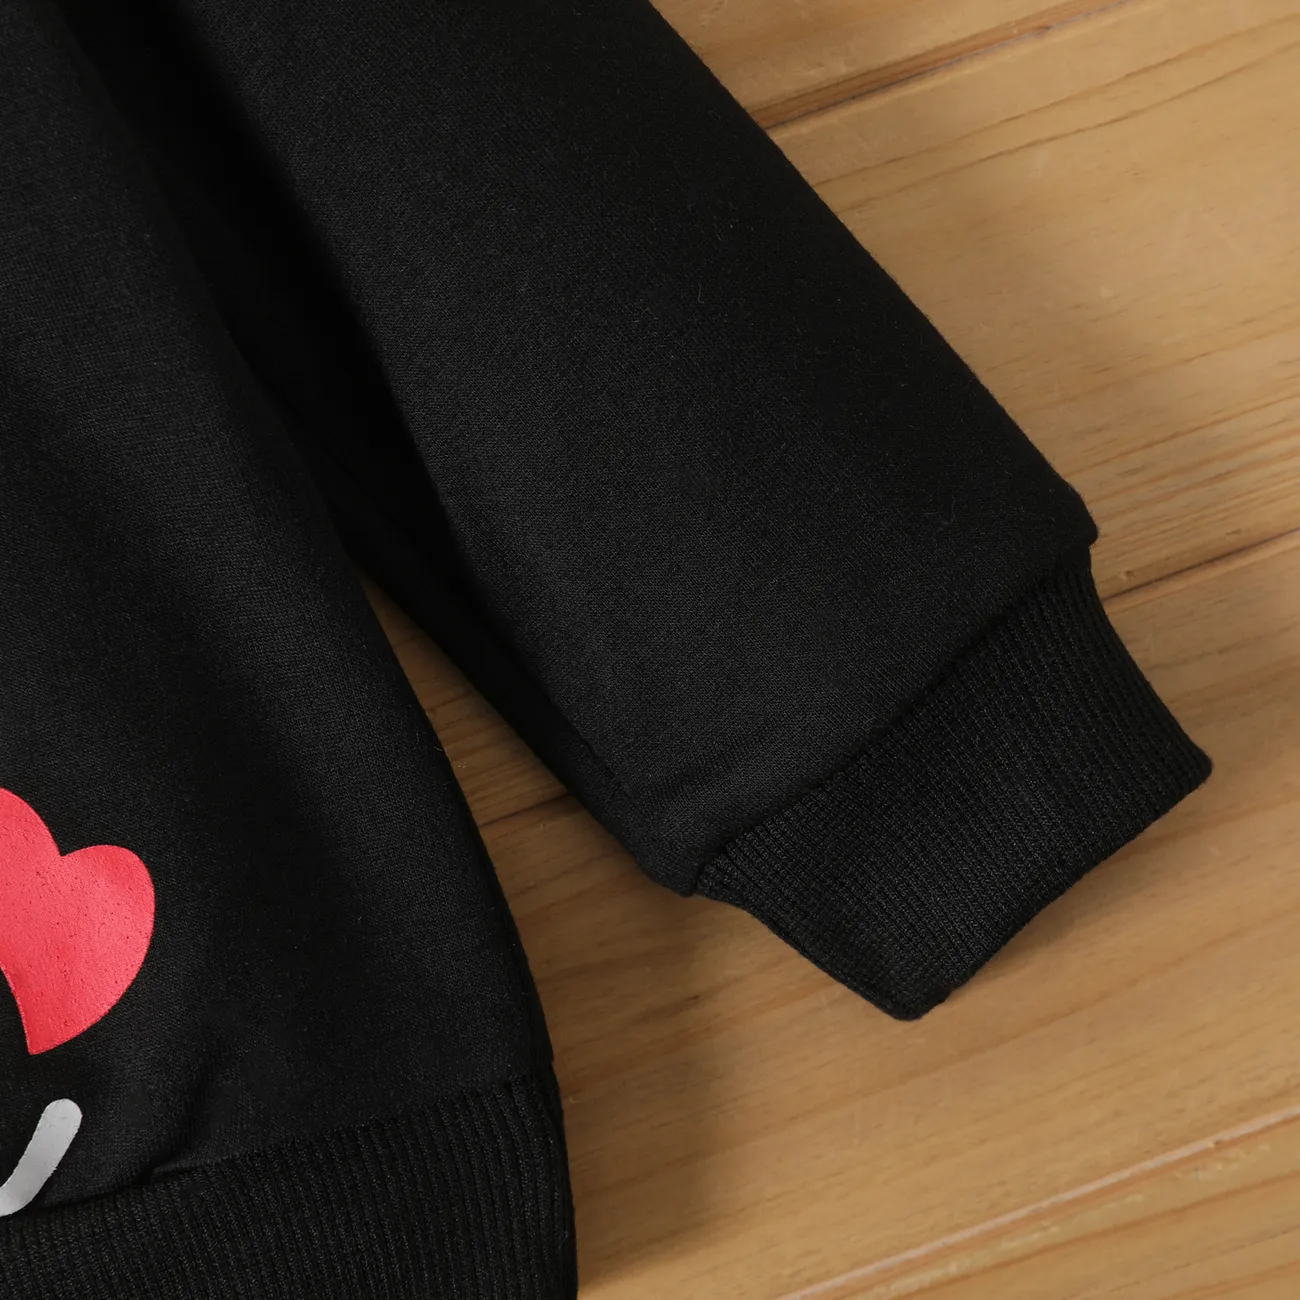 Baby Boy/Girl Heart & Letter Print Long-sleeve Sweatshirt Black big image 1